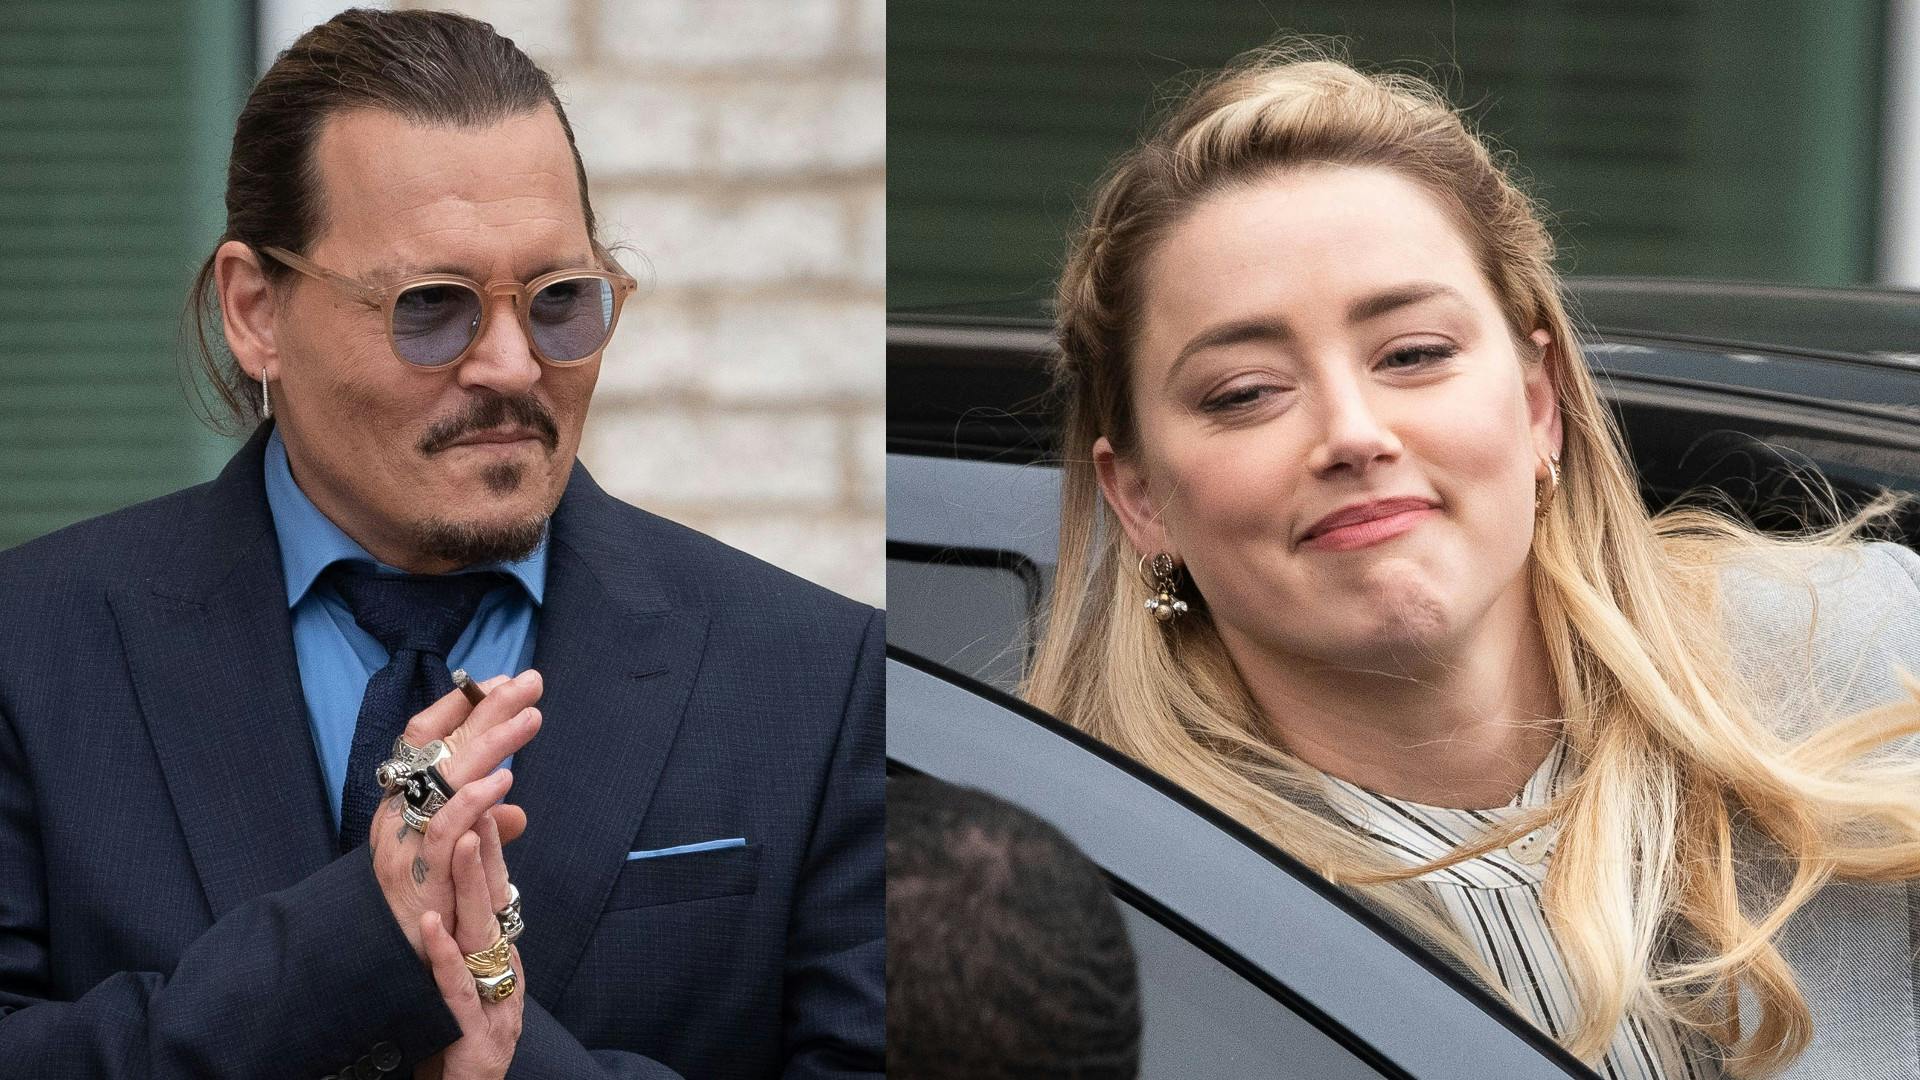 Nu sker det! Onsdag aften - dansk tid - får vi en endelig dom i den juridiske stridighed mellem tidligere ægtefolk og superstjerner Johnny Depp og Amber Heard